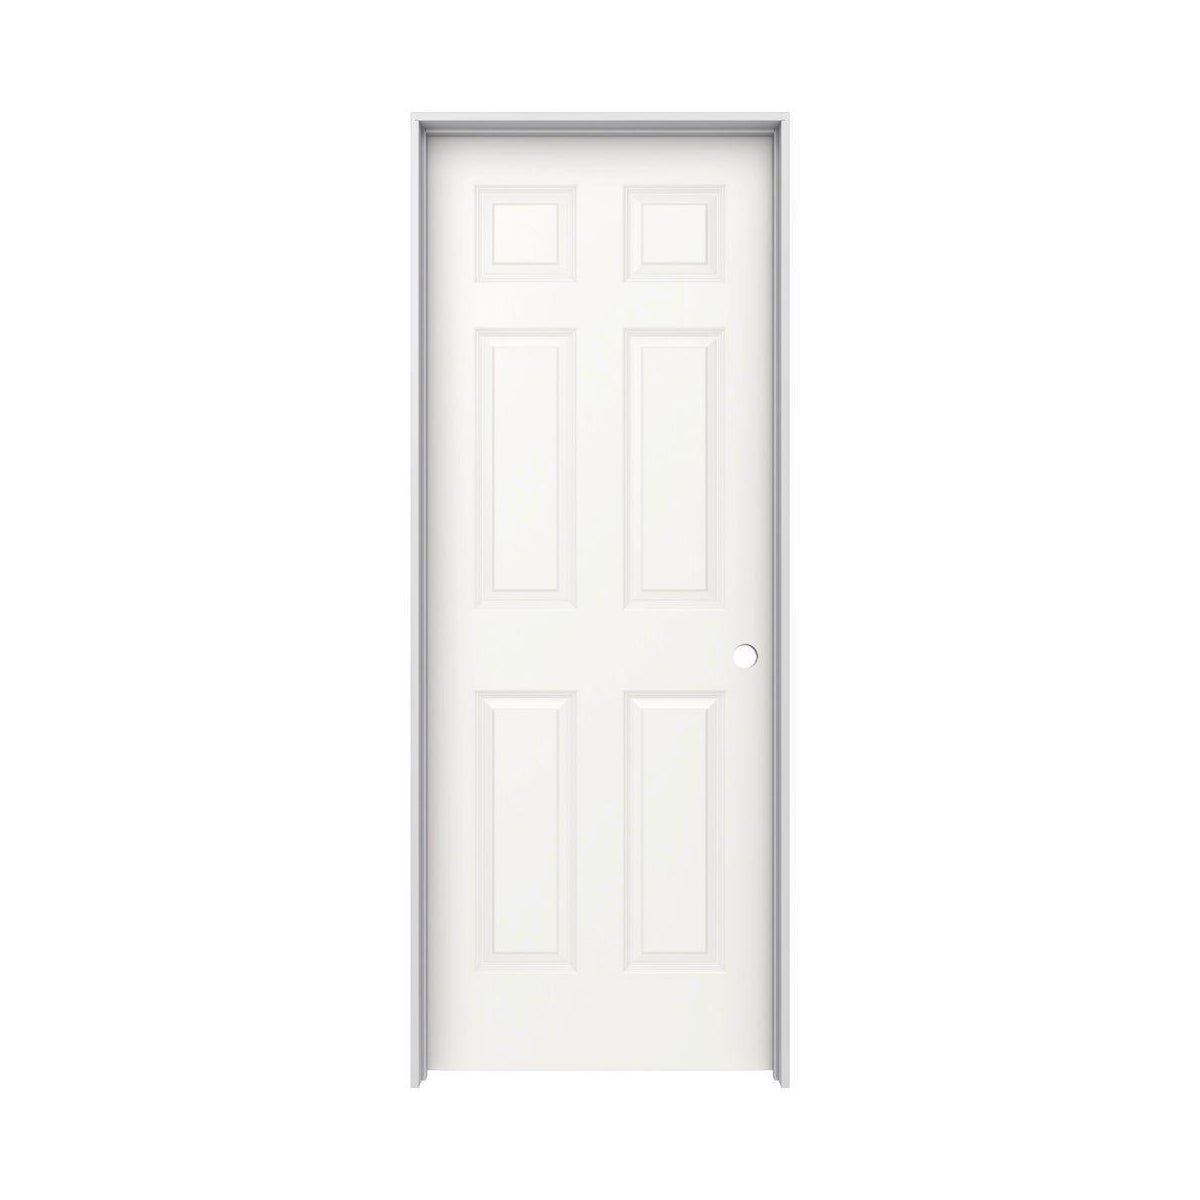 DOOR-LEFT-32"-6 PANEL-PRE-HUNG-4-1/2" JAMB